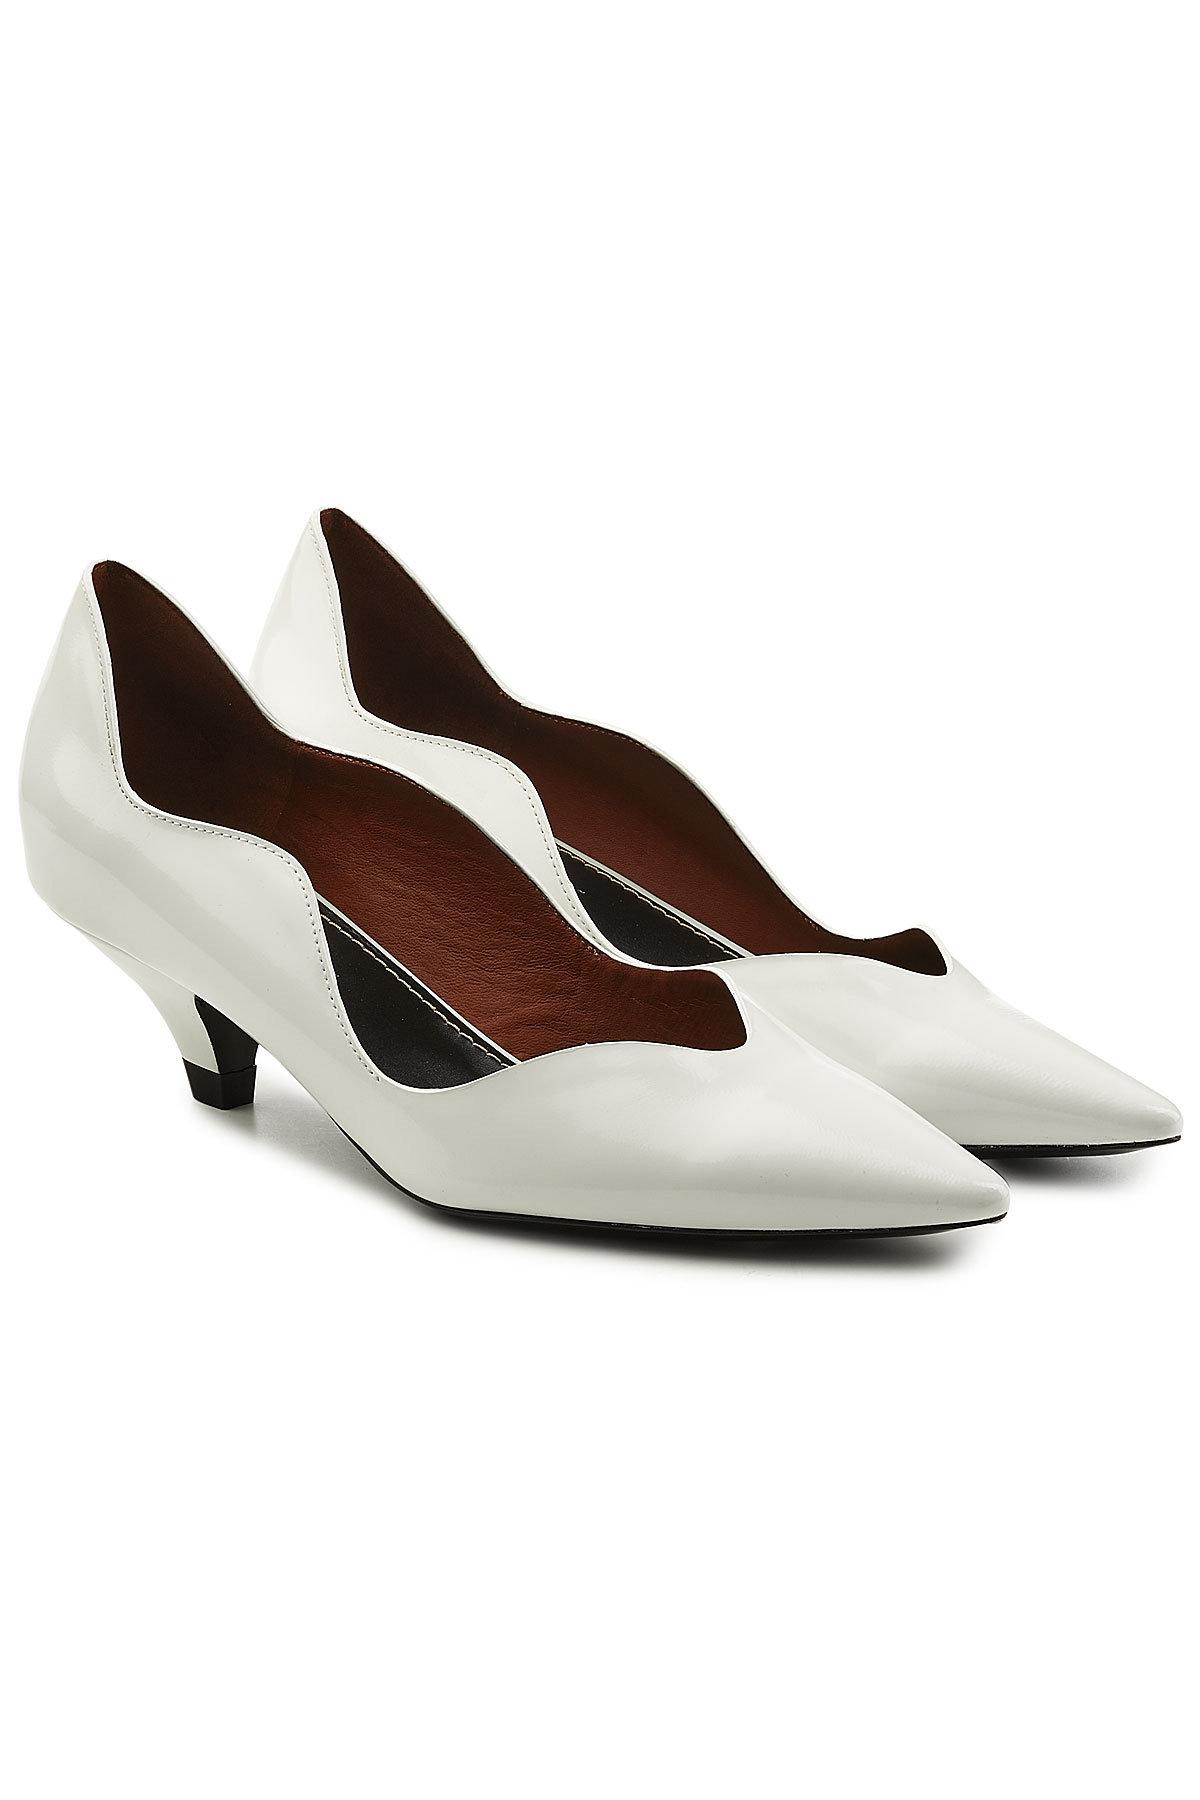 Proenza Schouler Leather Kitten Heel Pumps In Bianco | ModeSens